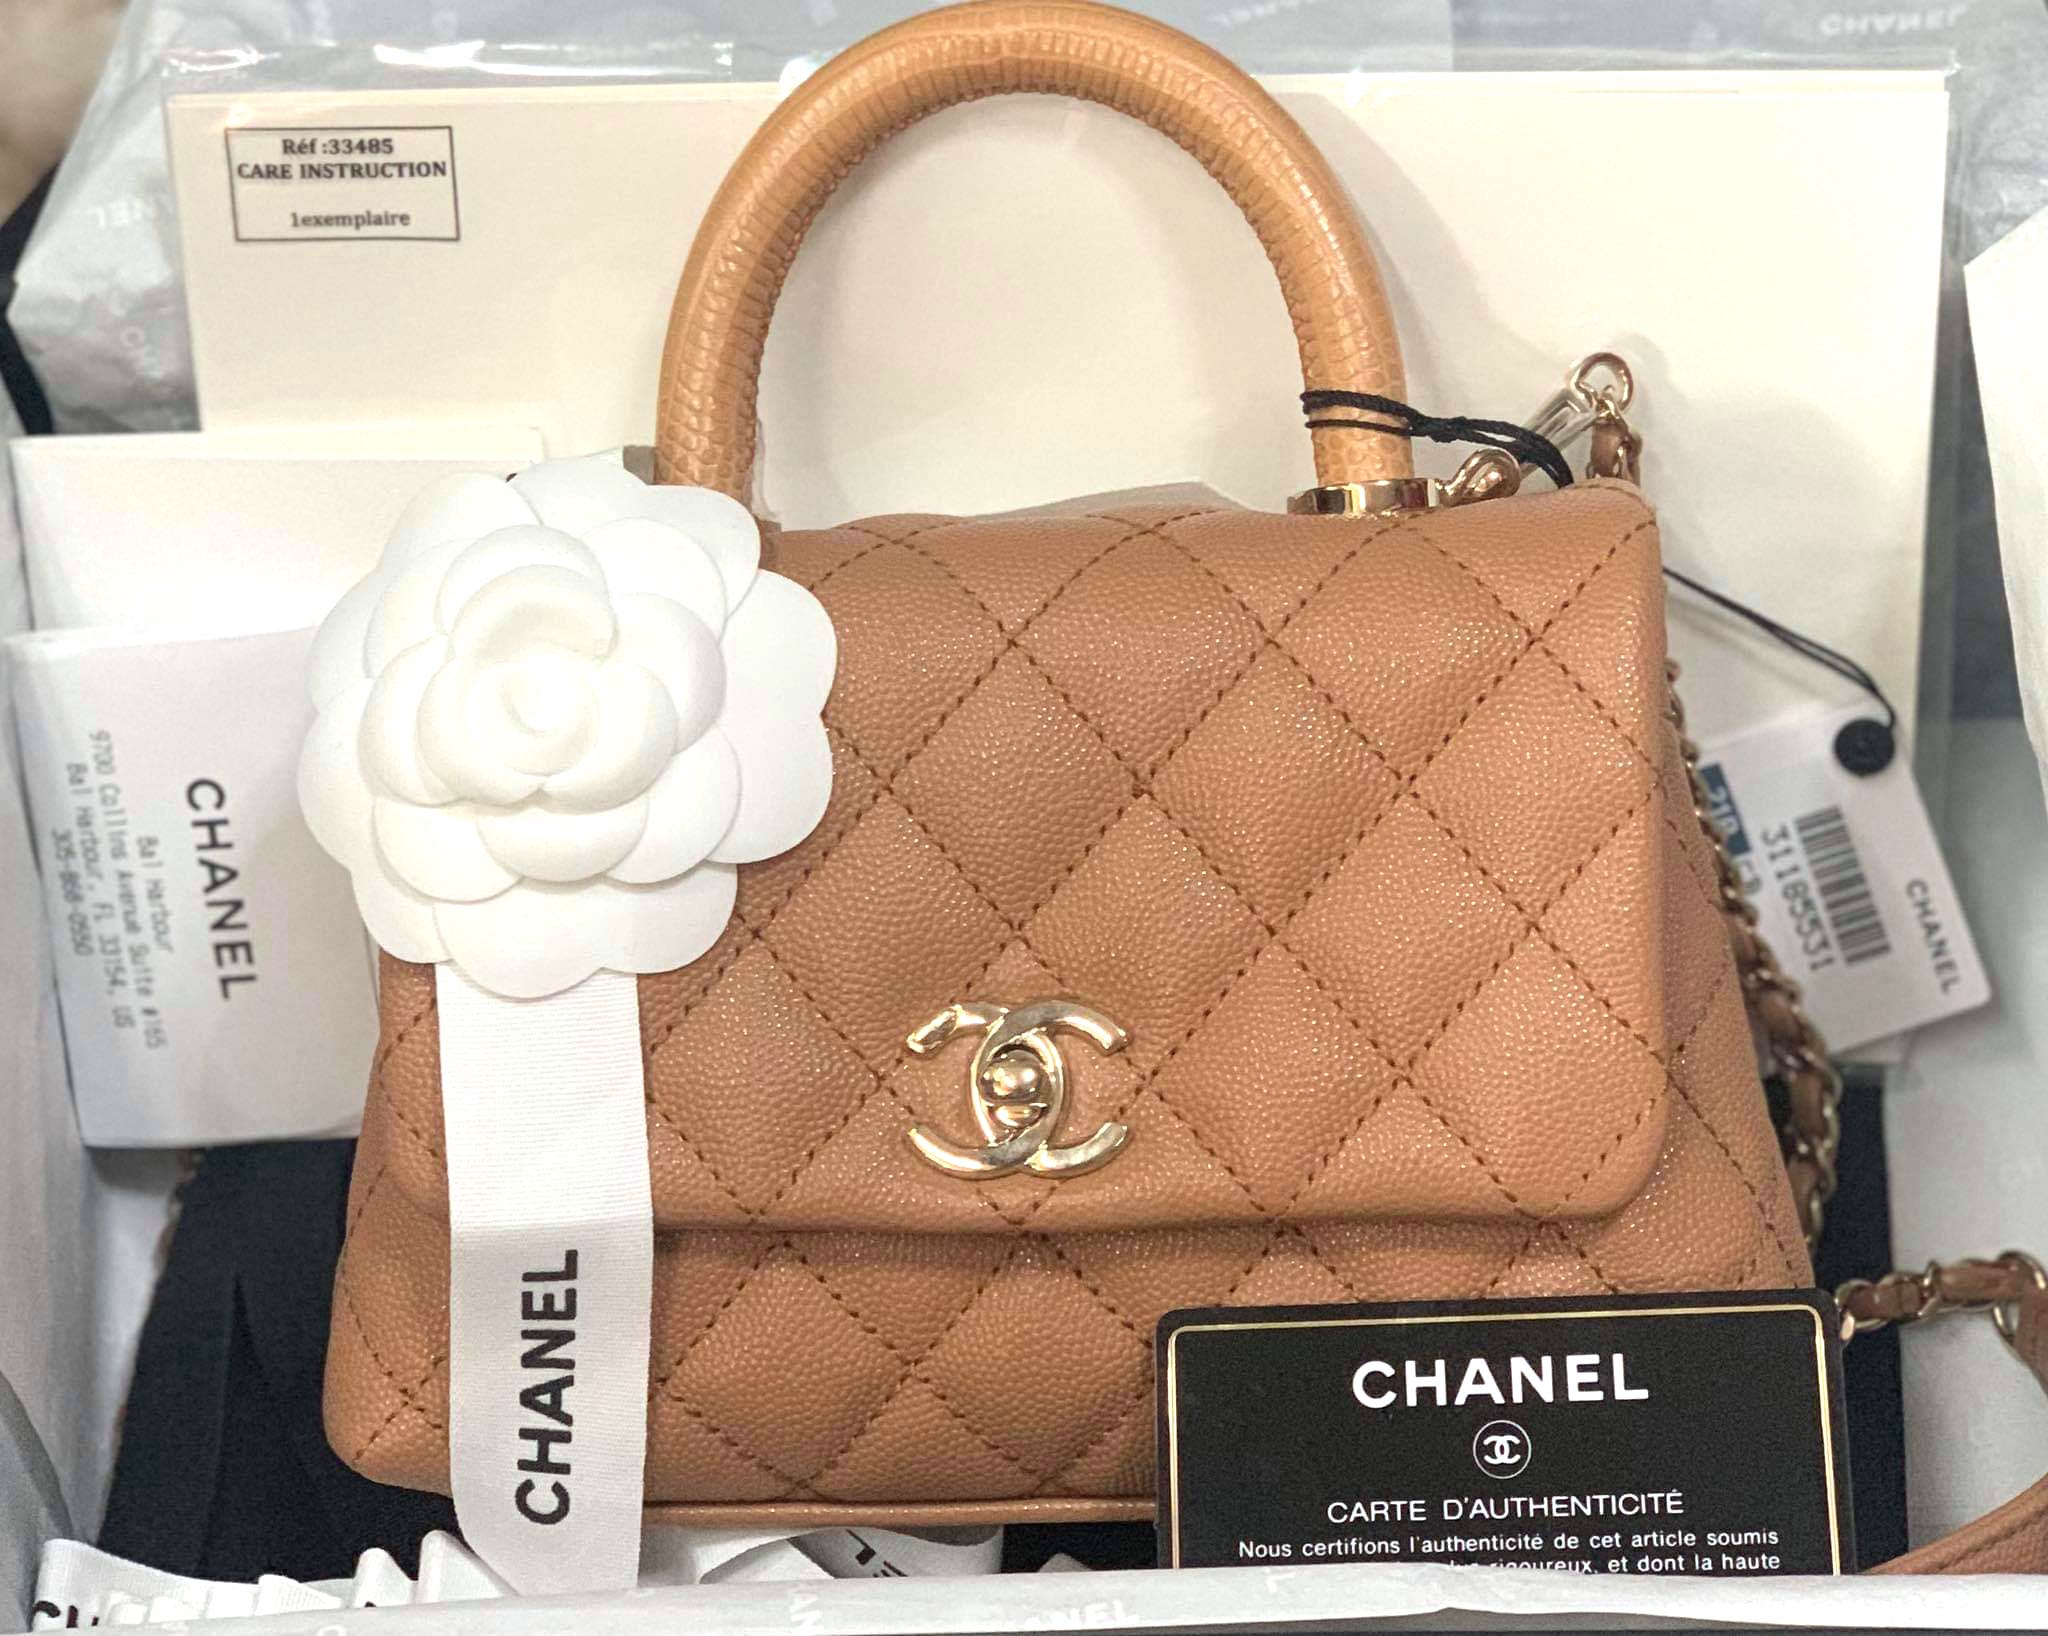 Chanel - Coco Handle Mini - Black Caviar - CGHW - Brand New